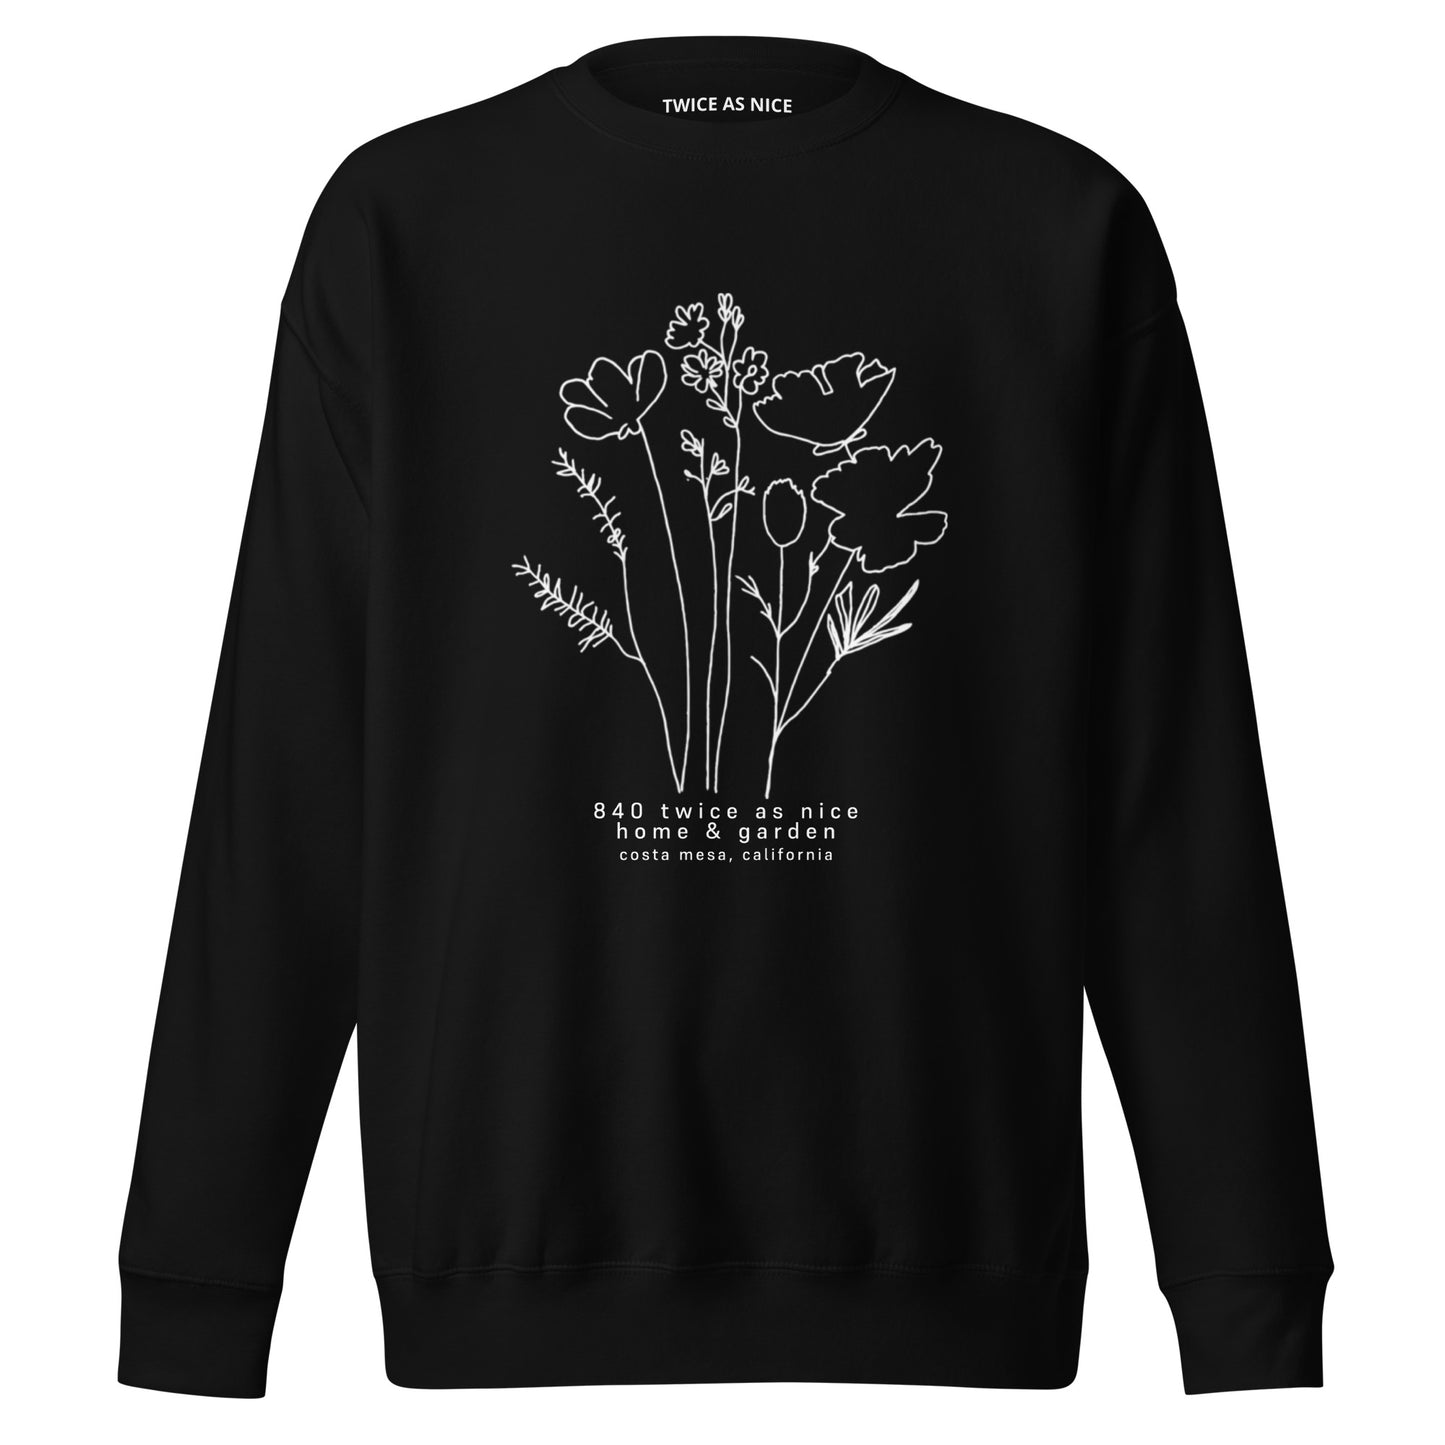 cannabis weed gift hoodie festival look green hoodie graphic sweatshirt gifts for stoners 420 friendly black crewneck sweatshirt 